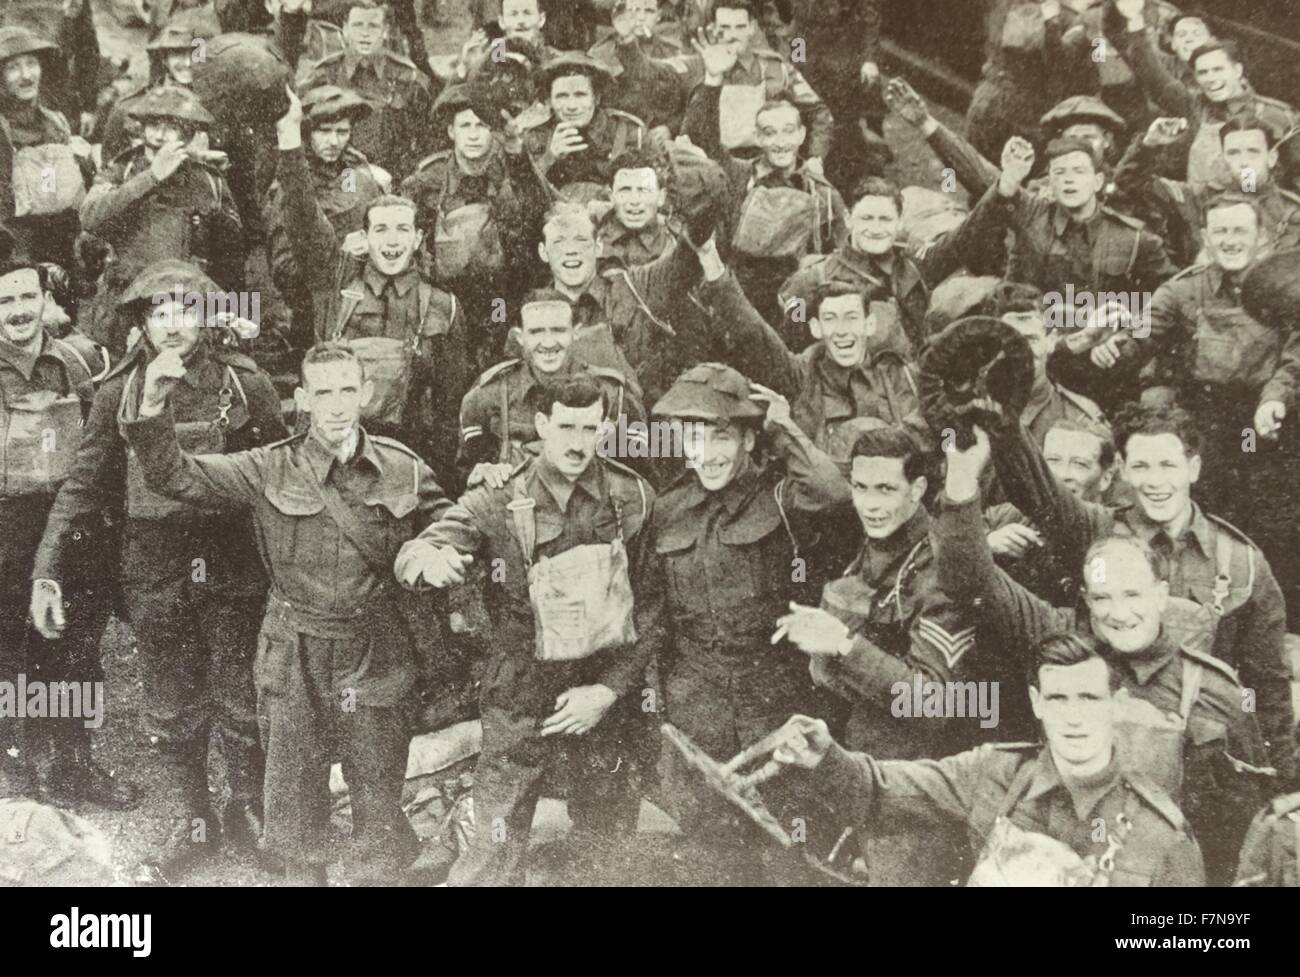 Foto von britischen und französischen Truppen singen die alten Lieder des Krieges. Zum zweiten Mal segelte die British Expeditionary Force nach Frankreich, um ihre französischen Verbündeten zu helfen. Datierte 1939 Stockfoto